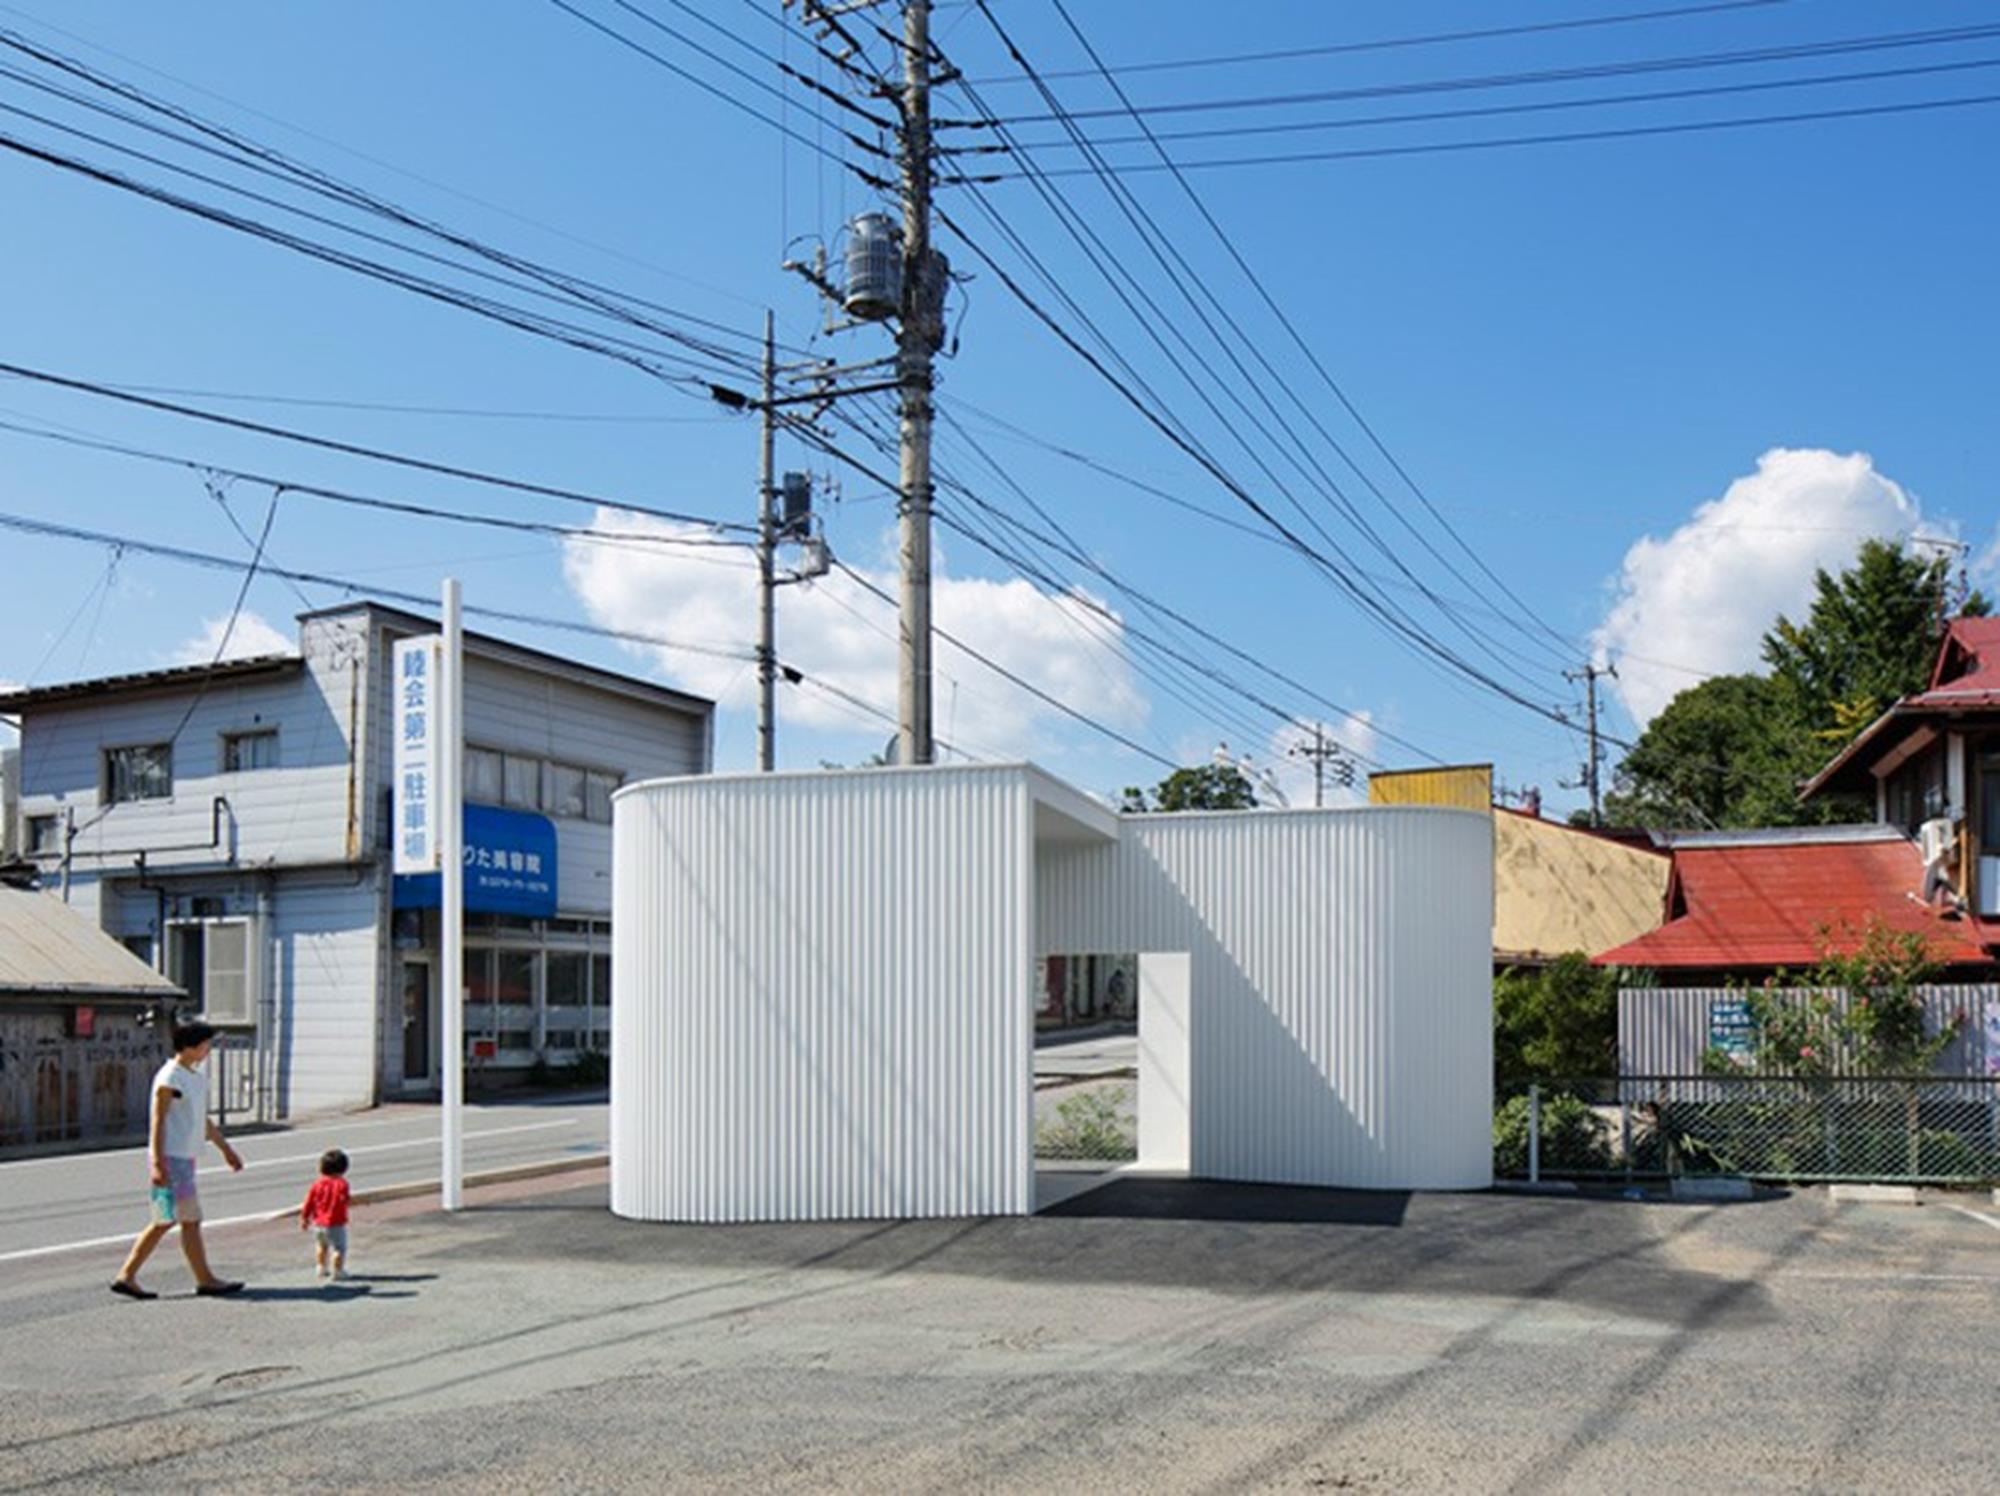 kubo-tsushima-architects-isemachi-public-toilet-japan-designboom-01-818x612 (Copy)